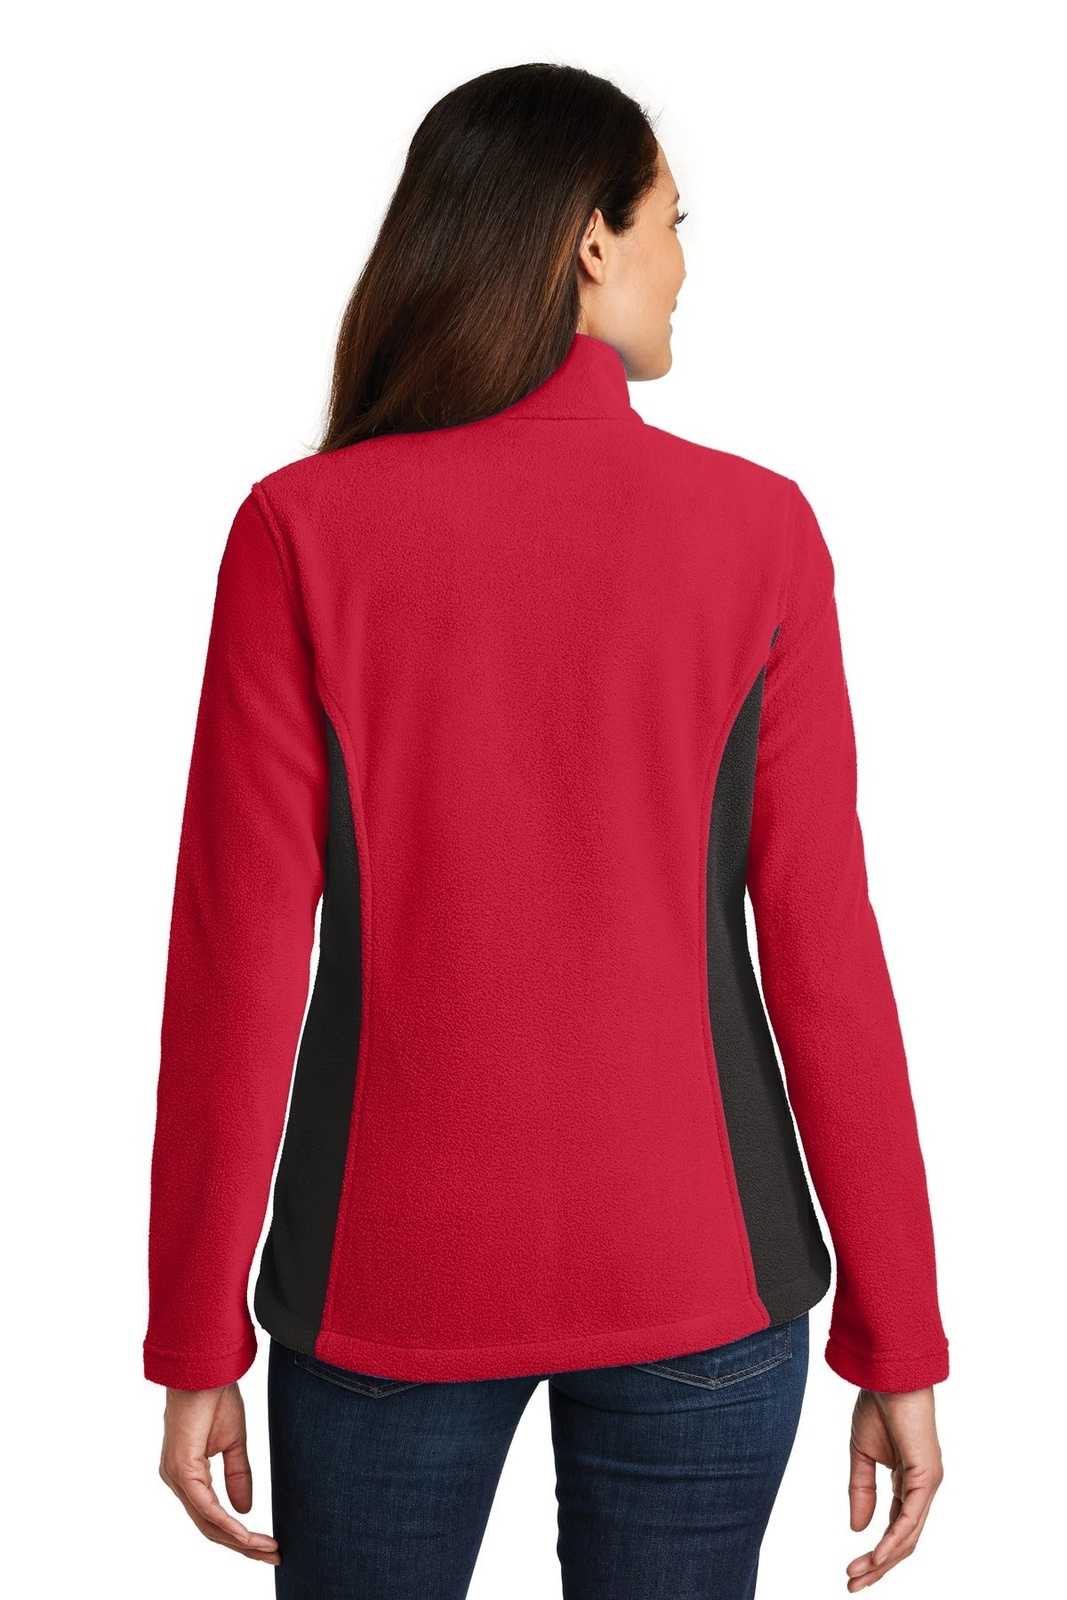 Port Authority L216 Ladies Colorblock Value Fleece Jacket - Rich Red Black - HIT a Double - 1